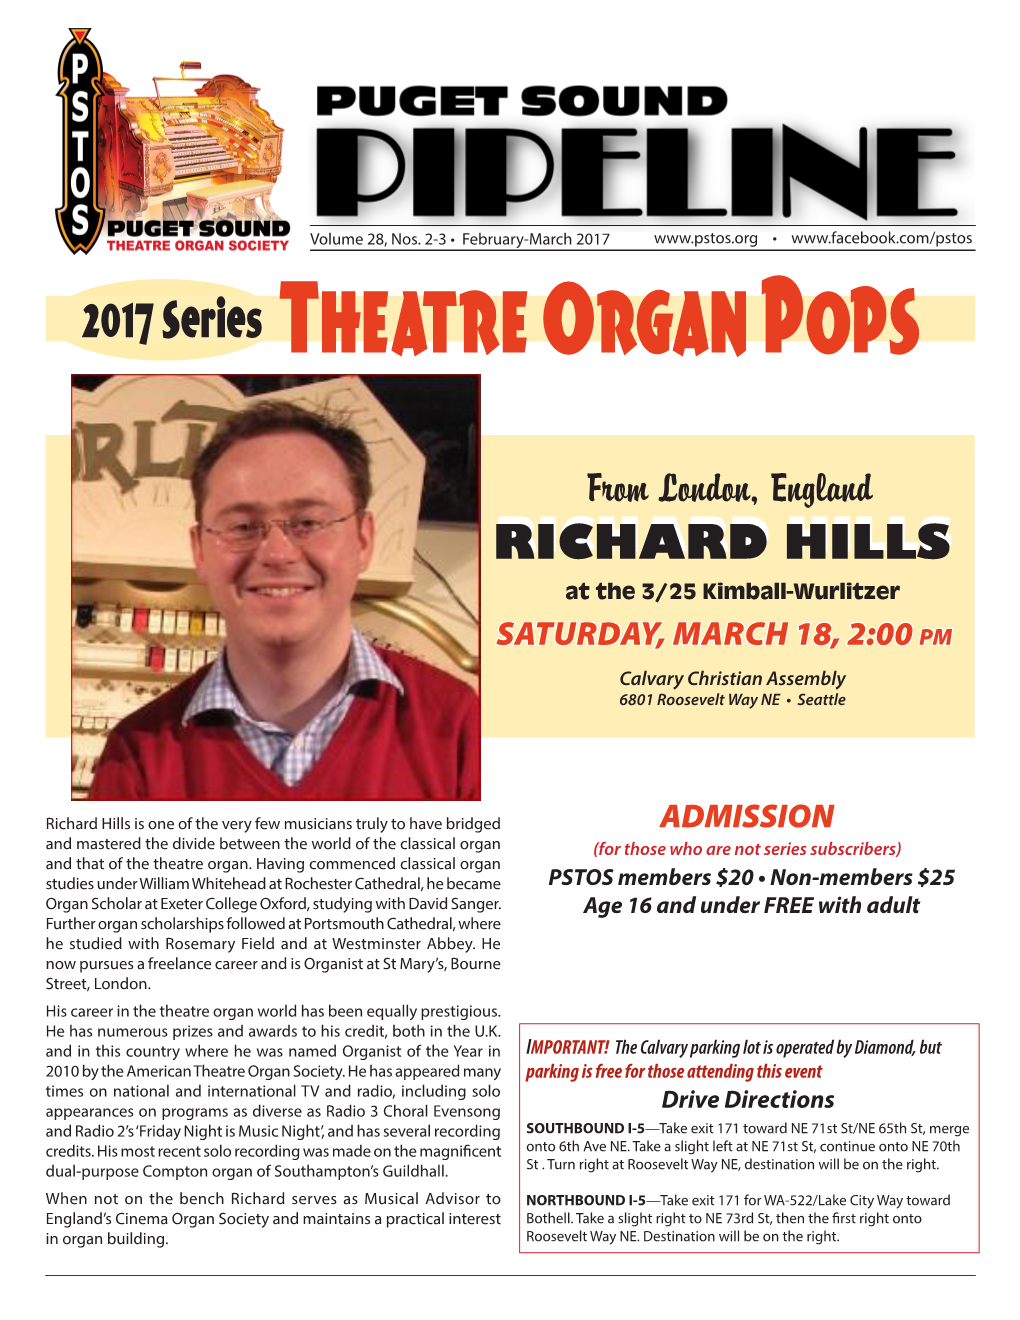 Theatre Organ Pops